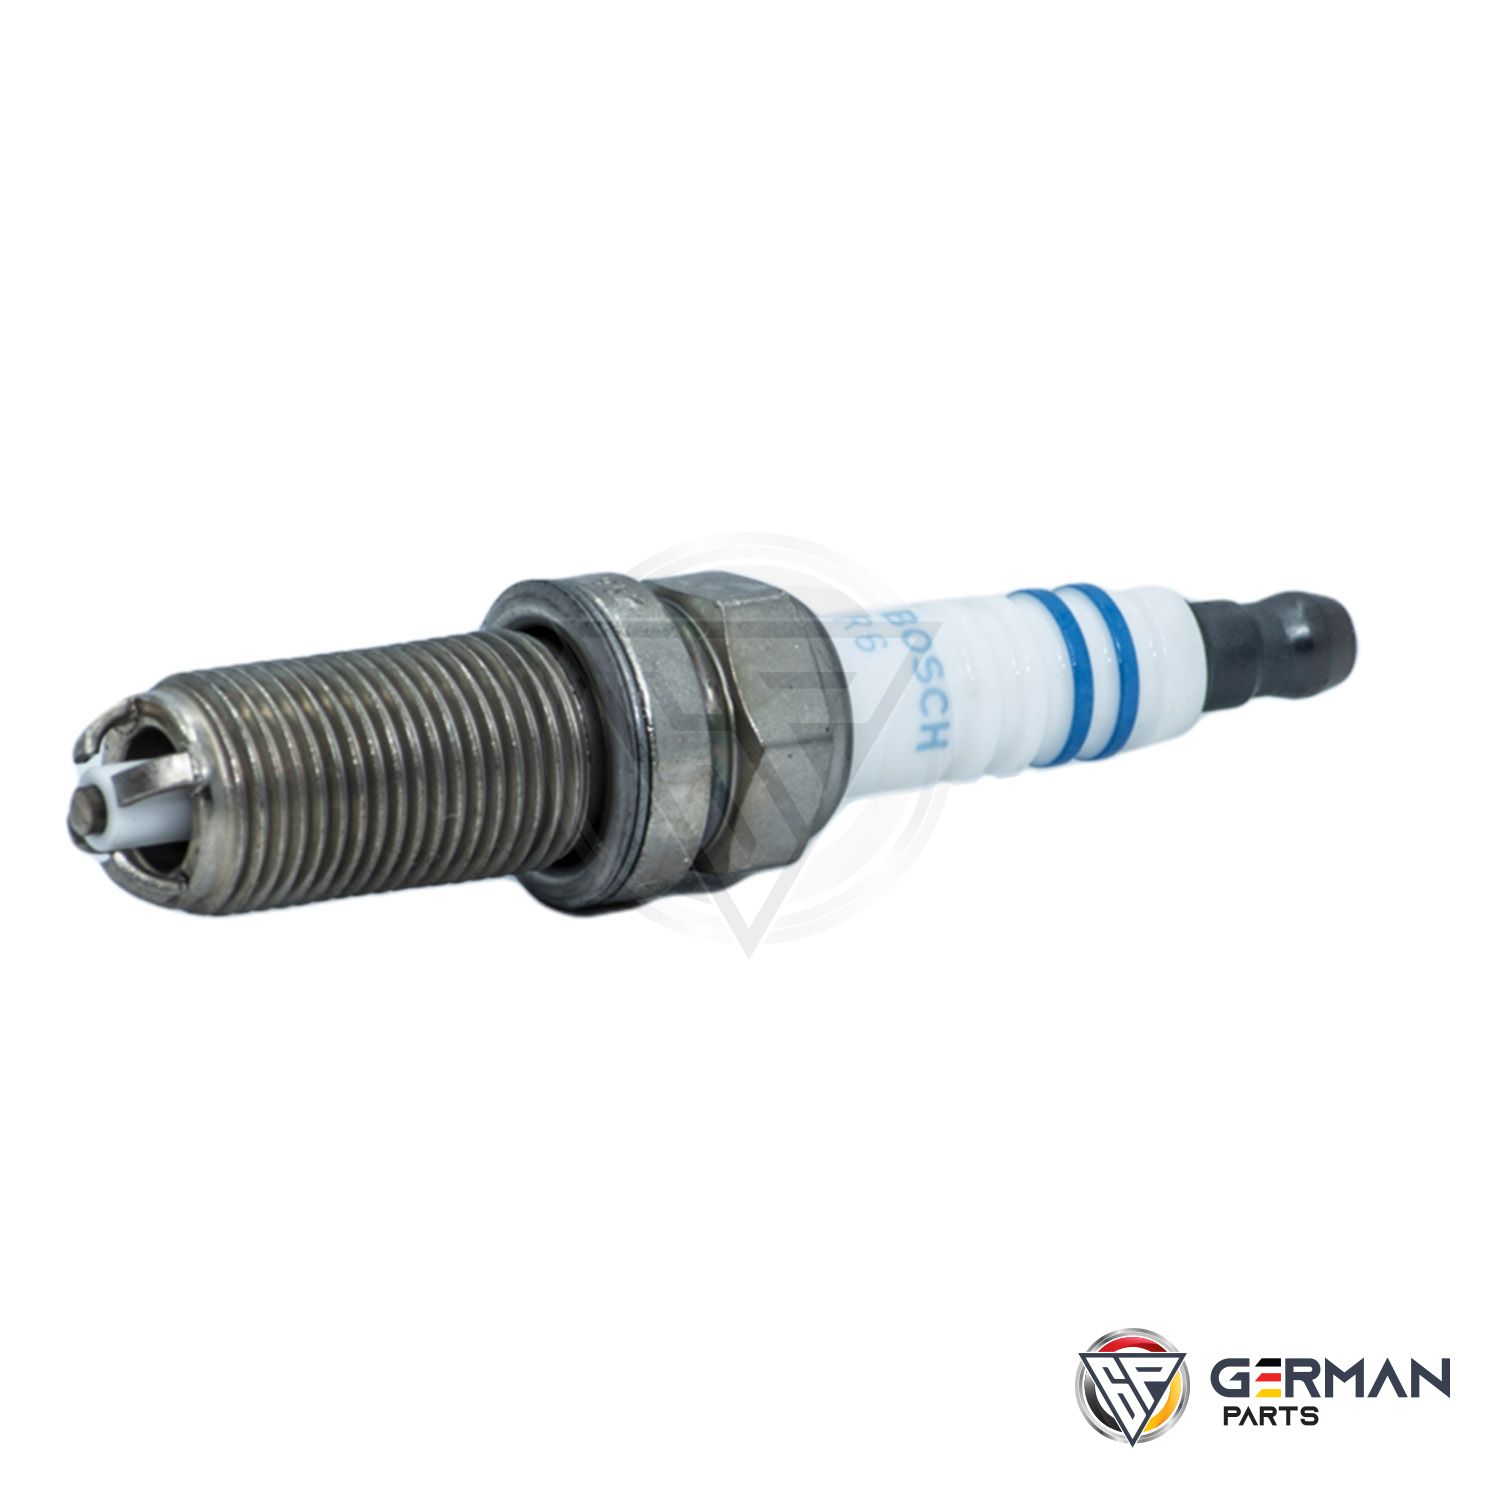 Buy Bosch Spark Plug 99917013090 - German Parts